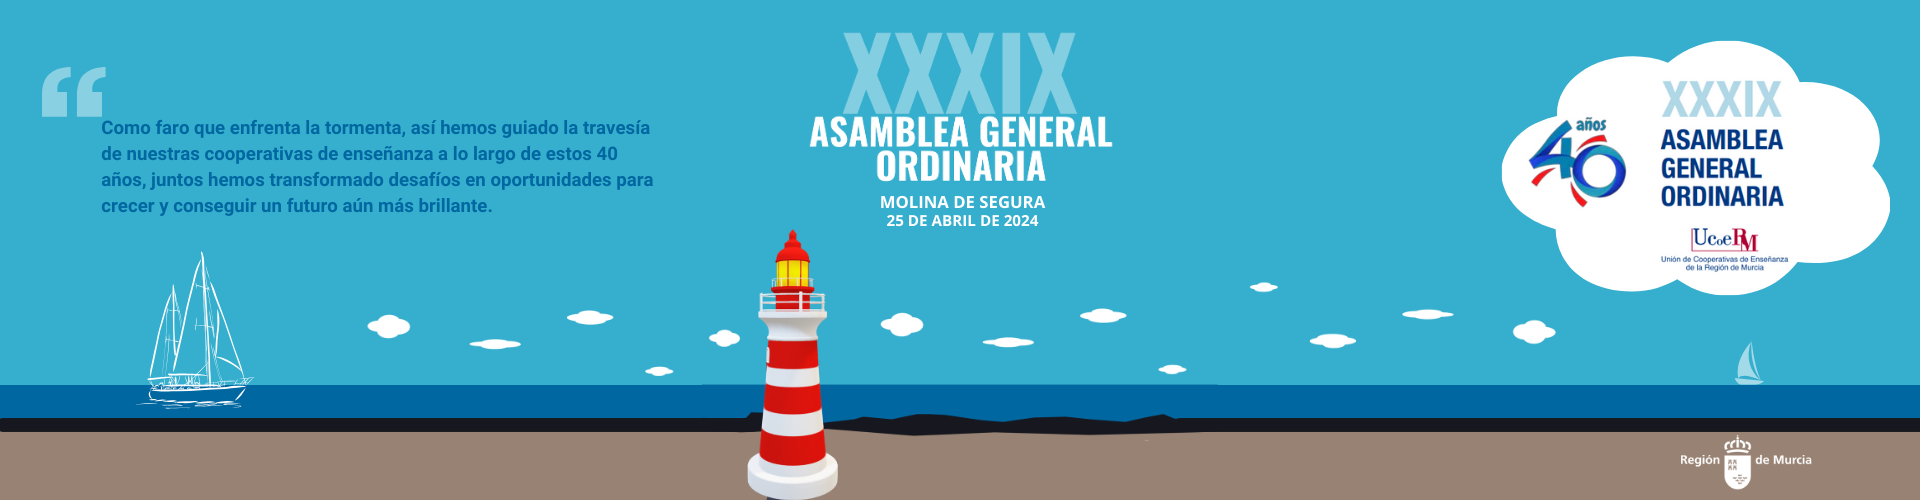 XXXIX Asamblea General Ordinaria de Ucoerm 2024